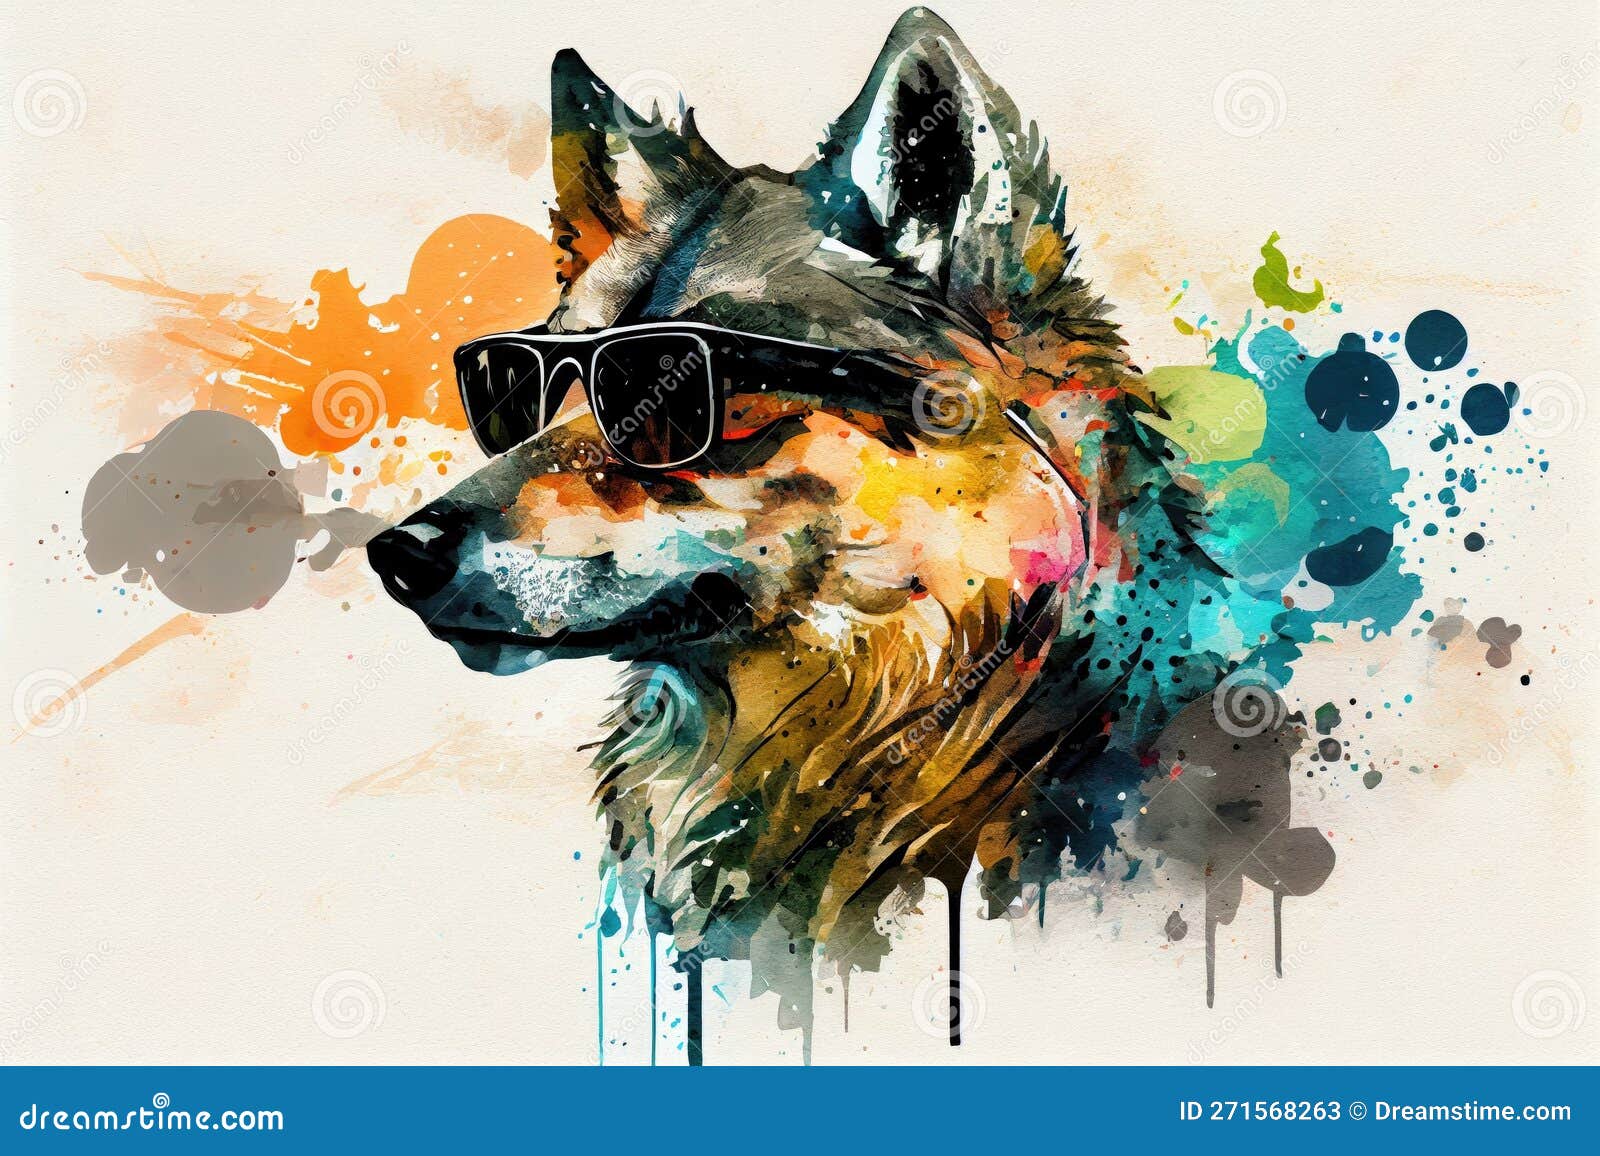 Cool wolf with sunglasses summer cartoon Digital Art by Lukas Davis - Pixels